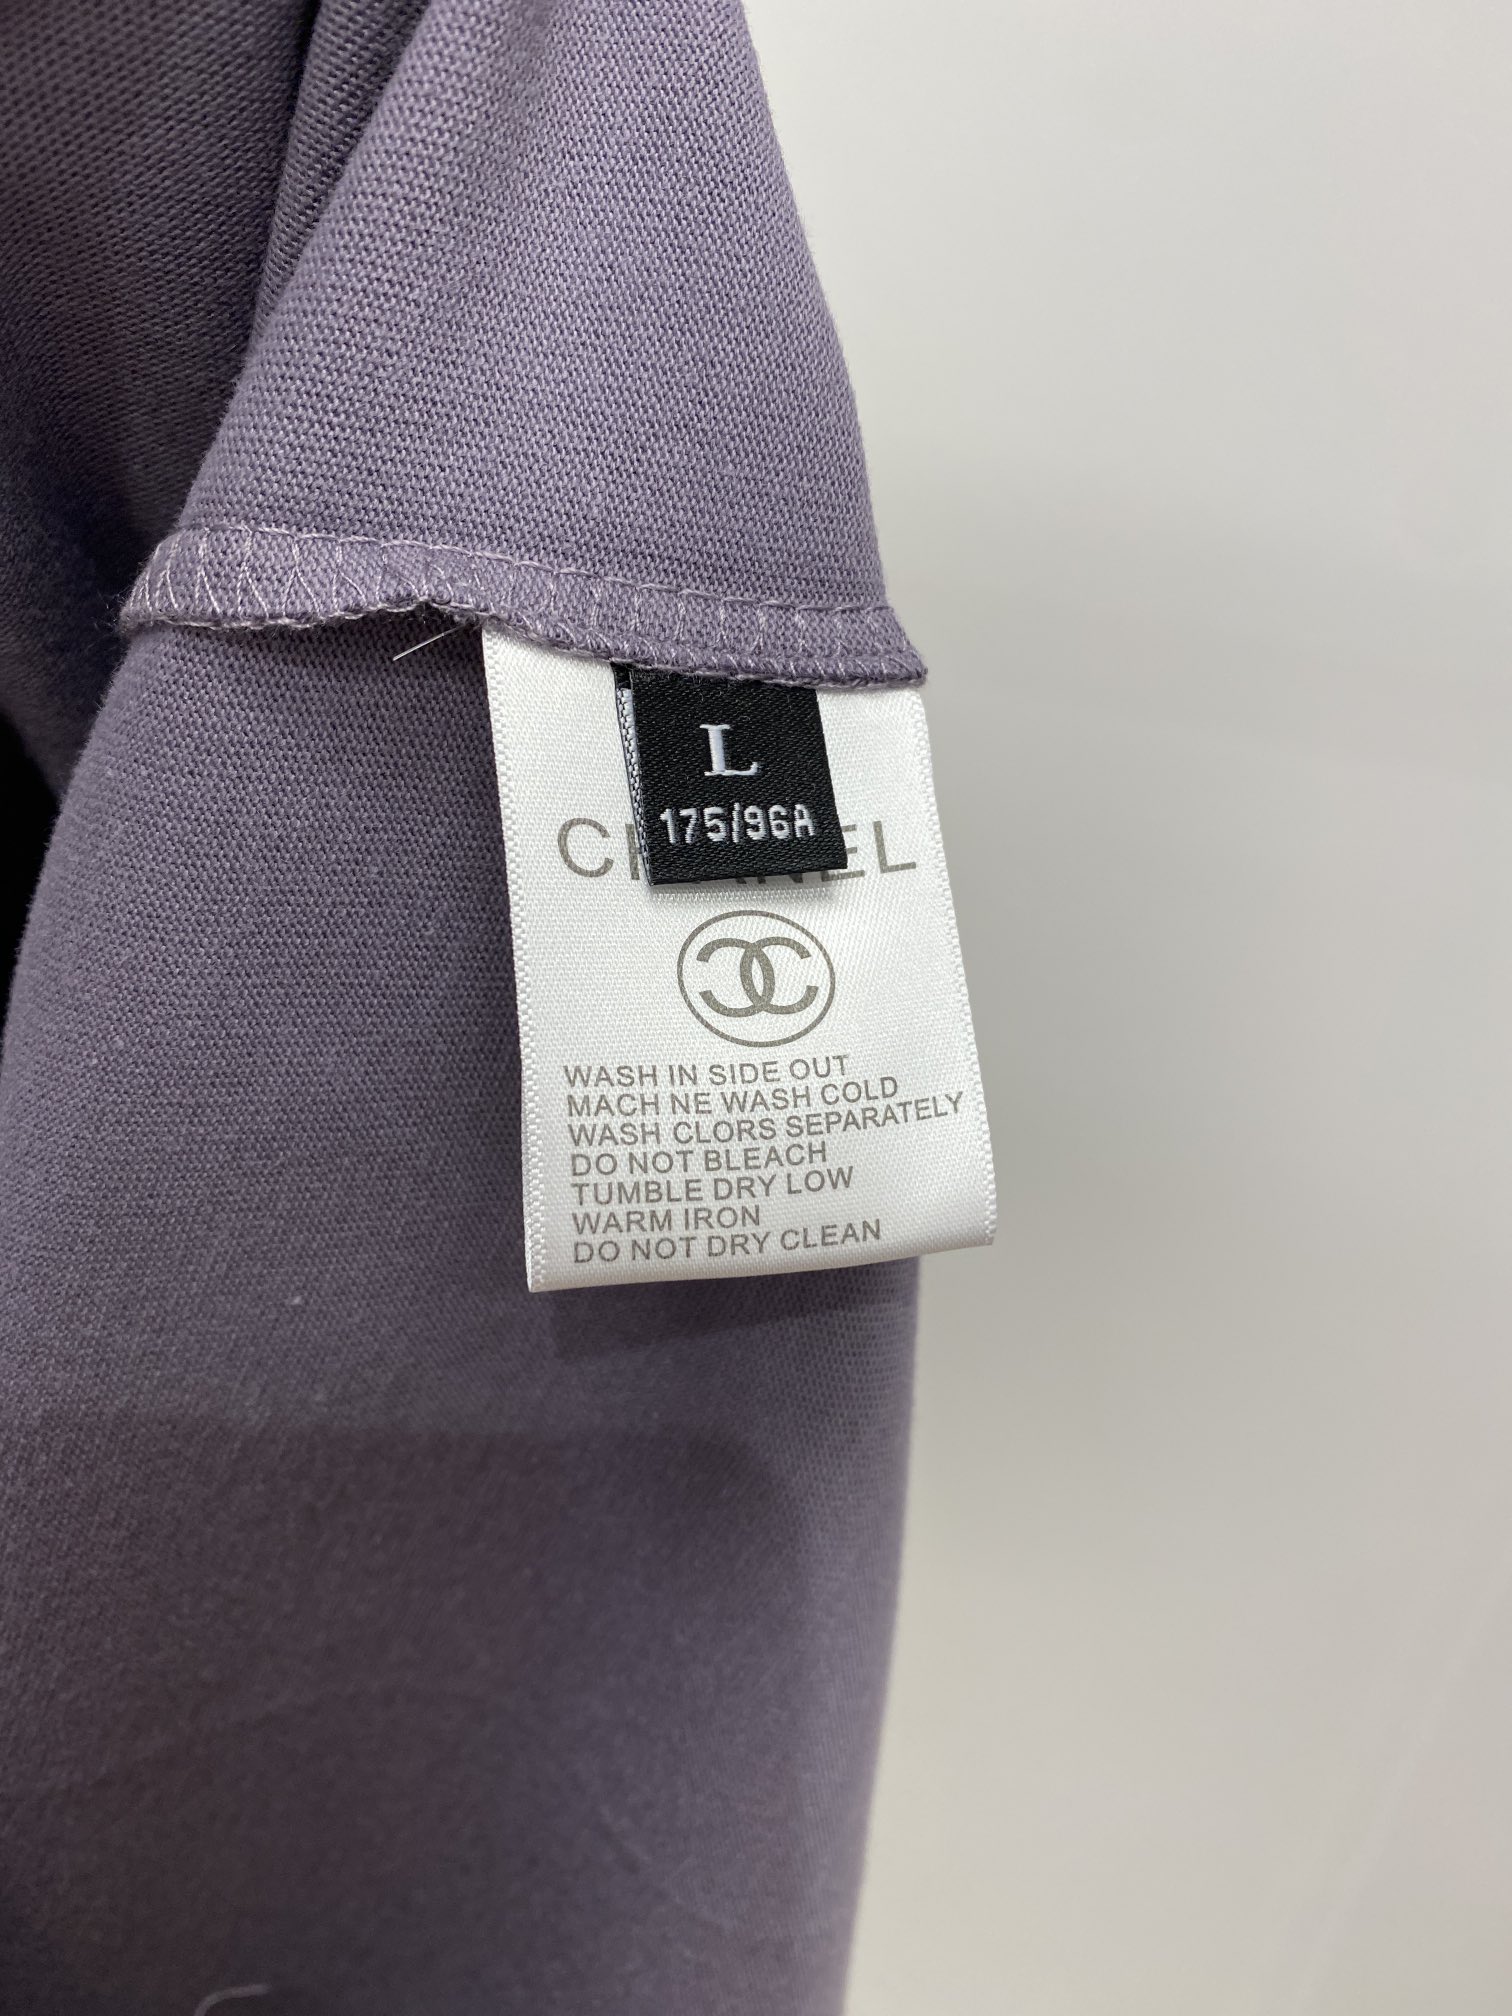 シャネル t シャツＮ級品 純綿 トップス 半袖 ロゴプリント 柔らかい ゆったり ファッション 2色可選_8